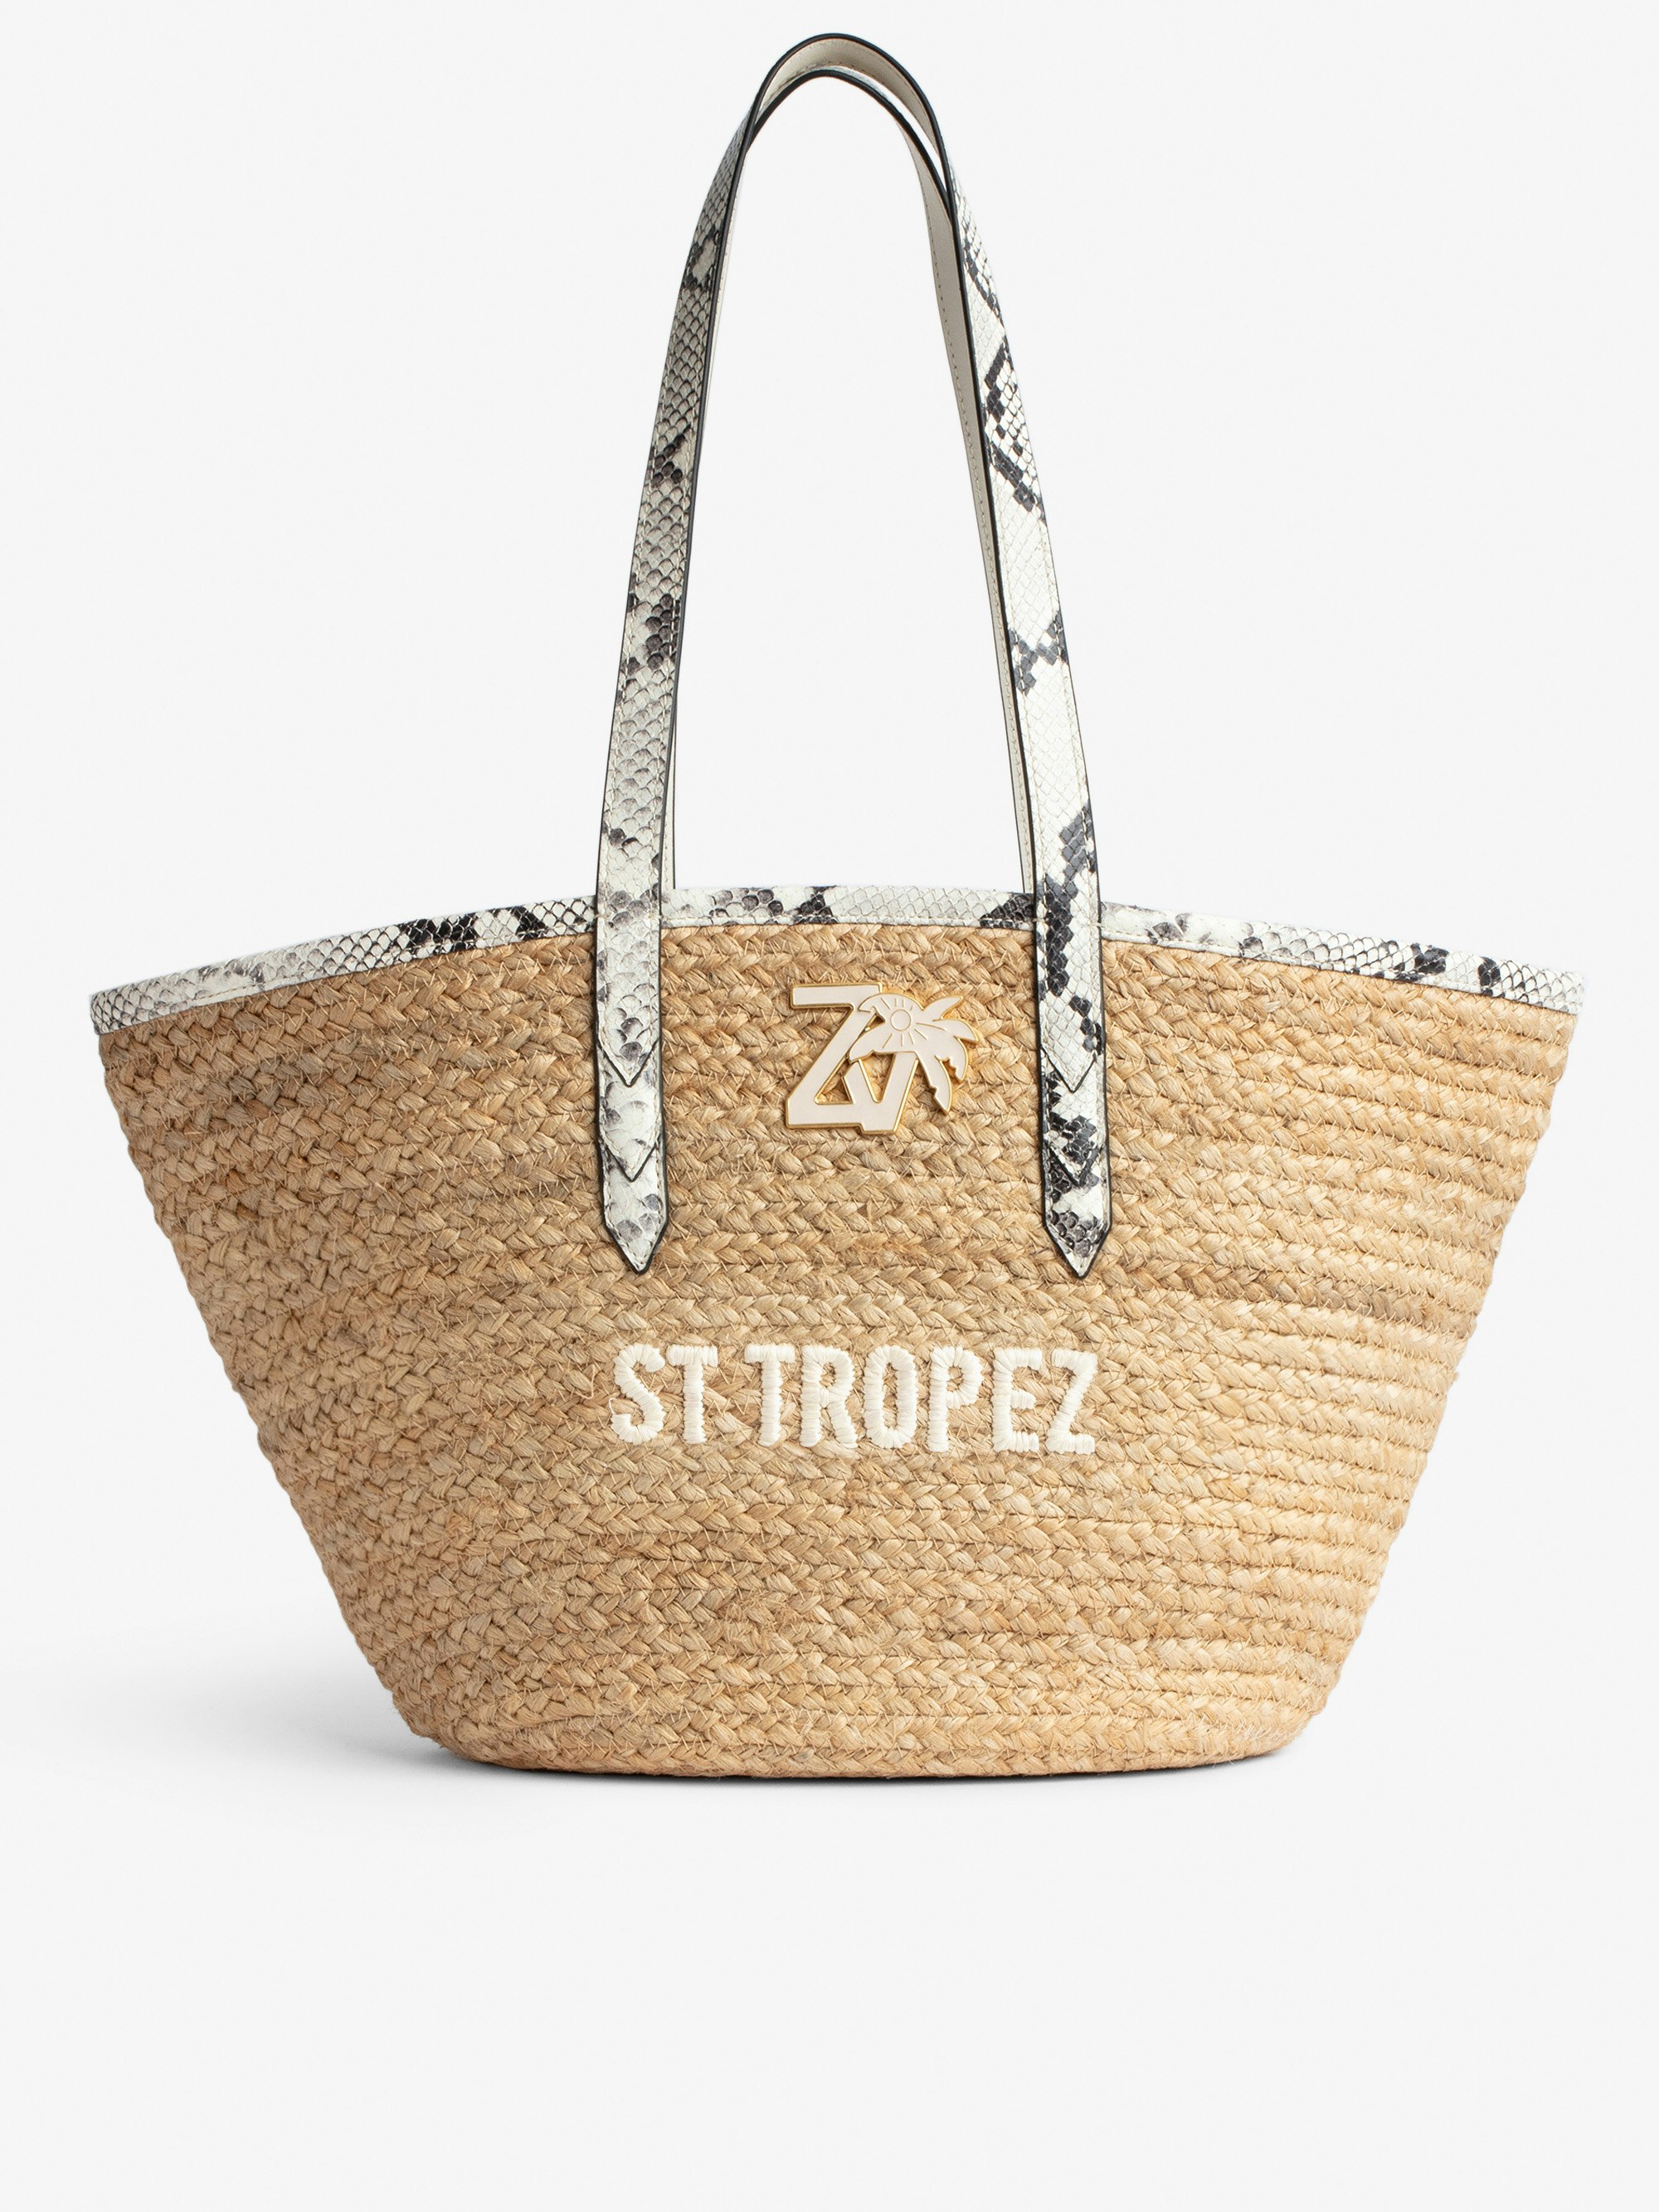 Bolso Le Beach Bag - Bolso de paja con asas de cuero color crudo efecto pitón, bordado «St Tropez» y con colgante ZV Mujer